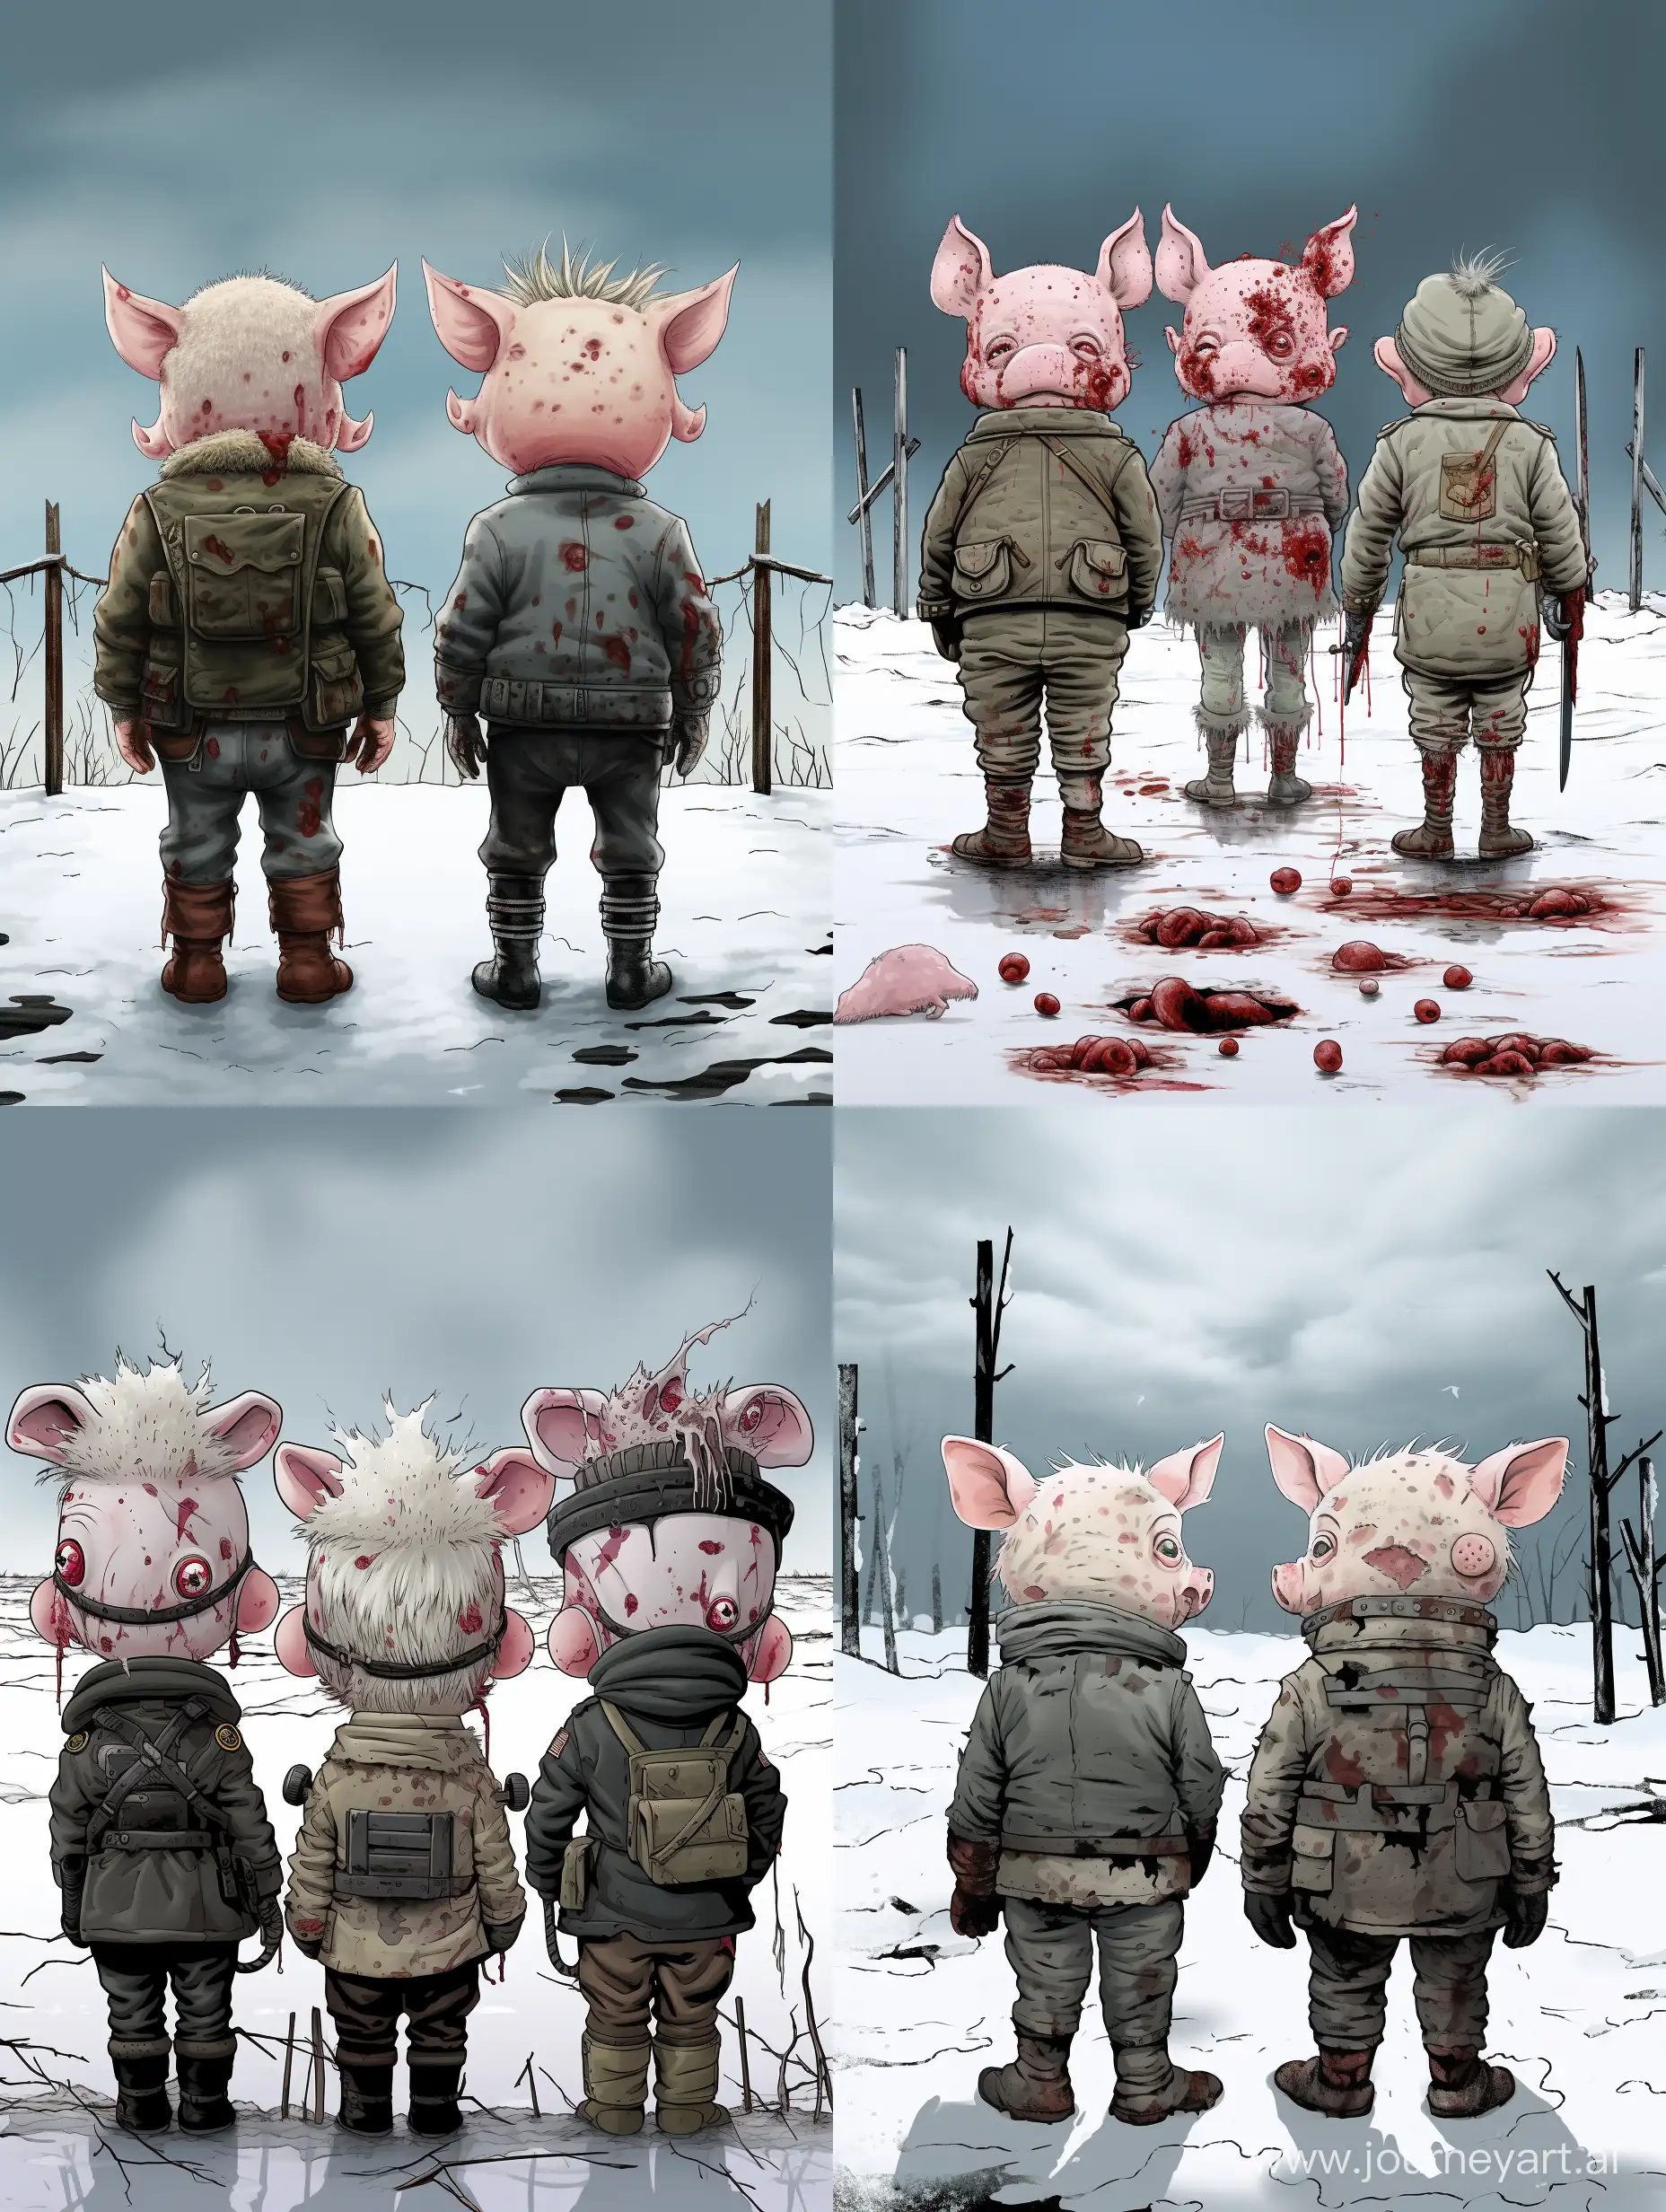 Frozen-Piglets-in-WarTorn-Uniforms-Emotional-Cartoon-Depiction-in-a-Bleak-Winter-Setting